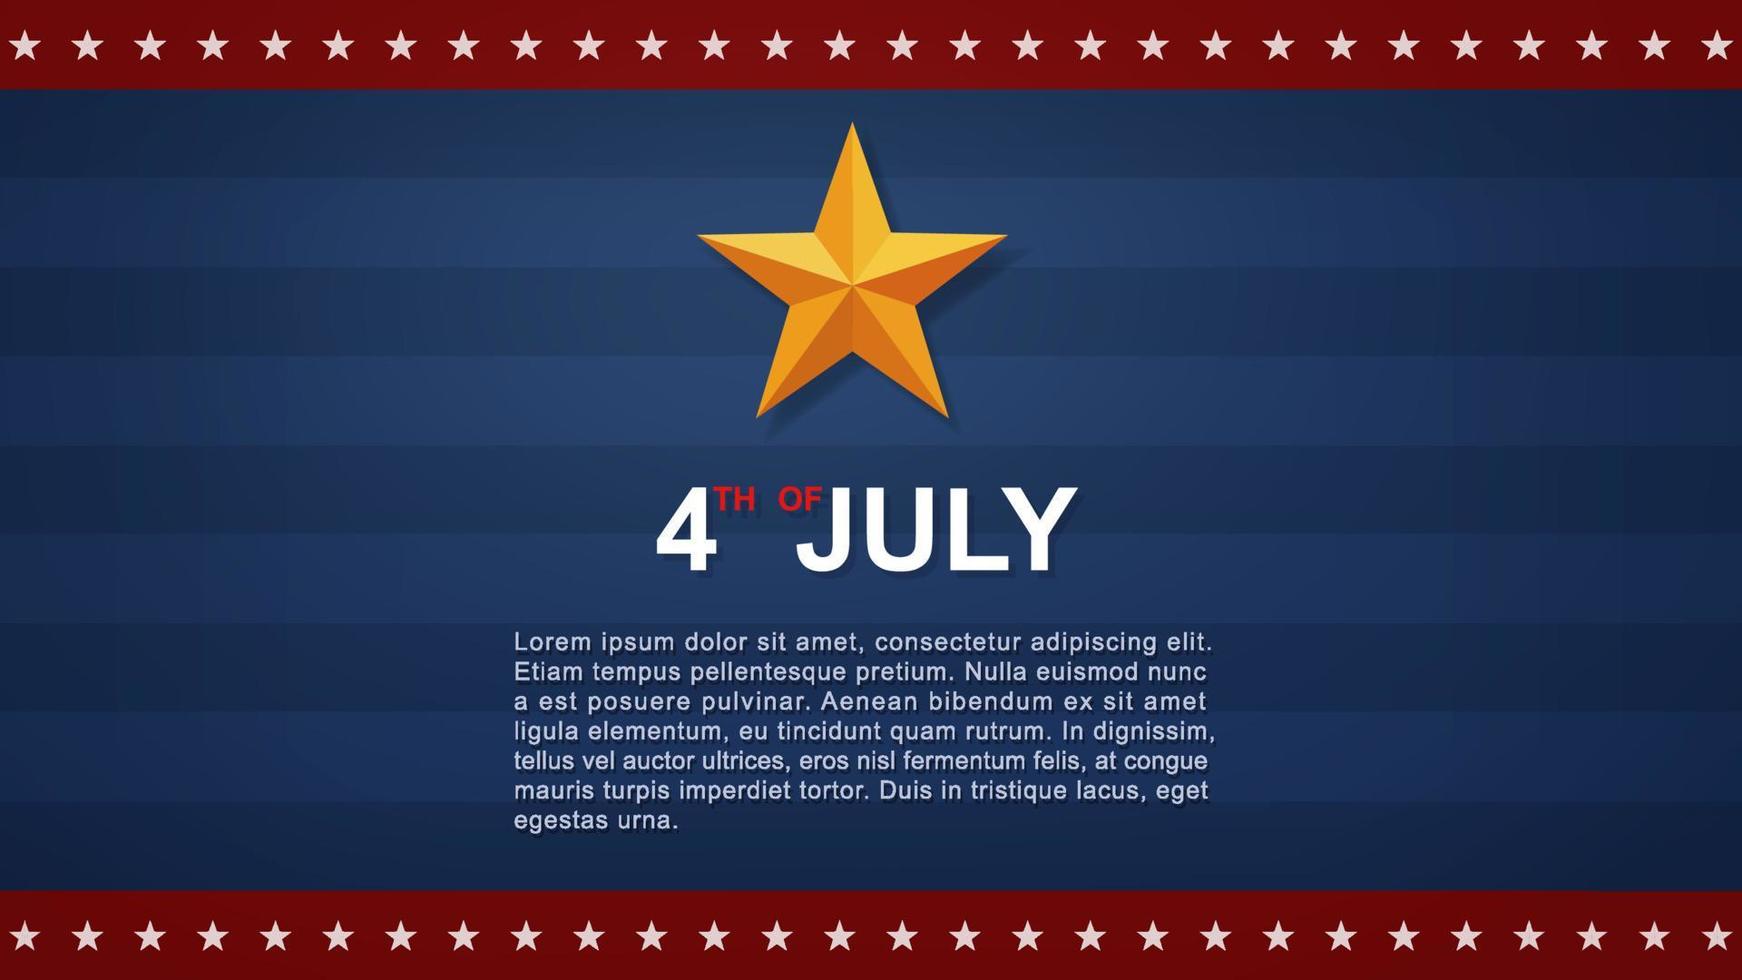 Sfondo del 4 luglio per la festa dell'indipendenza degli stati uniti d'america con mappa usa e motivo bandiera americana. illustrazione vettoriale. vettore